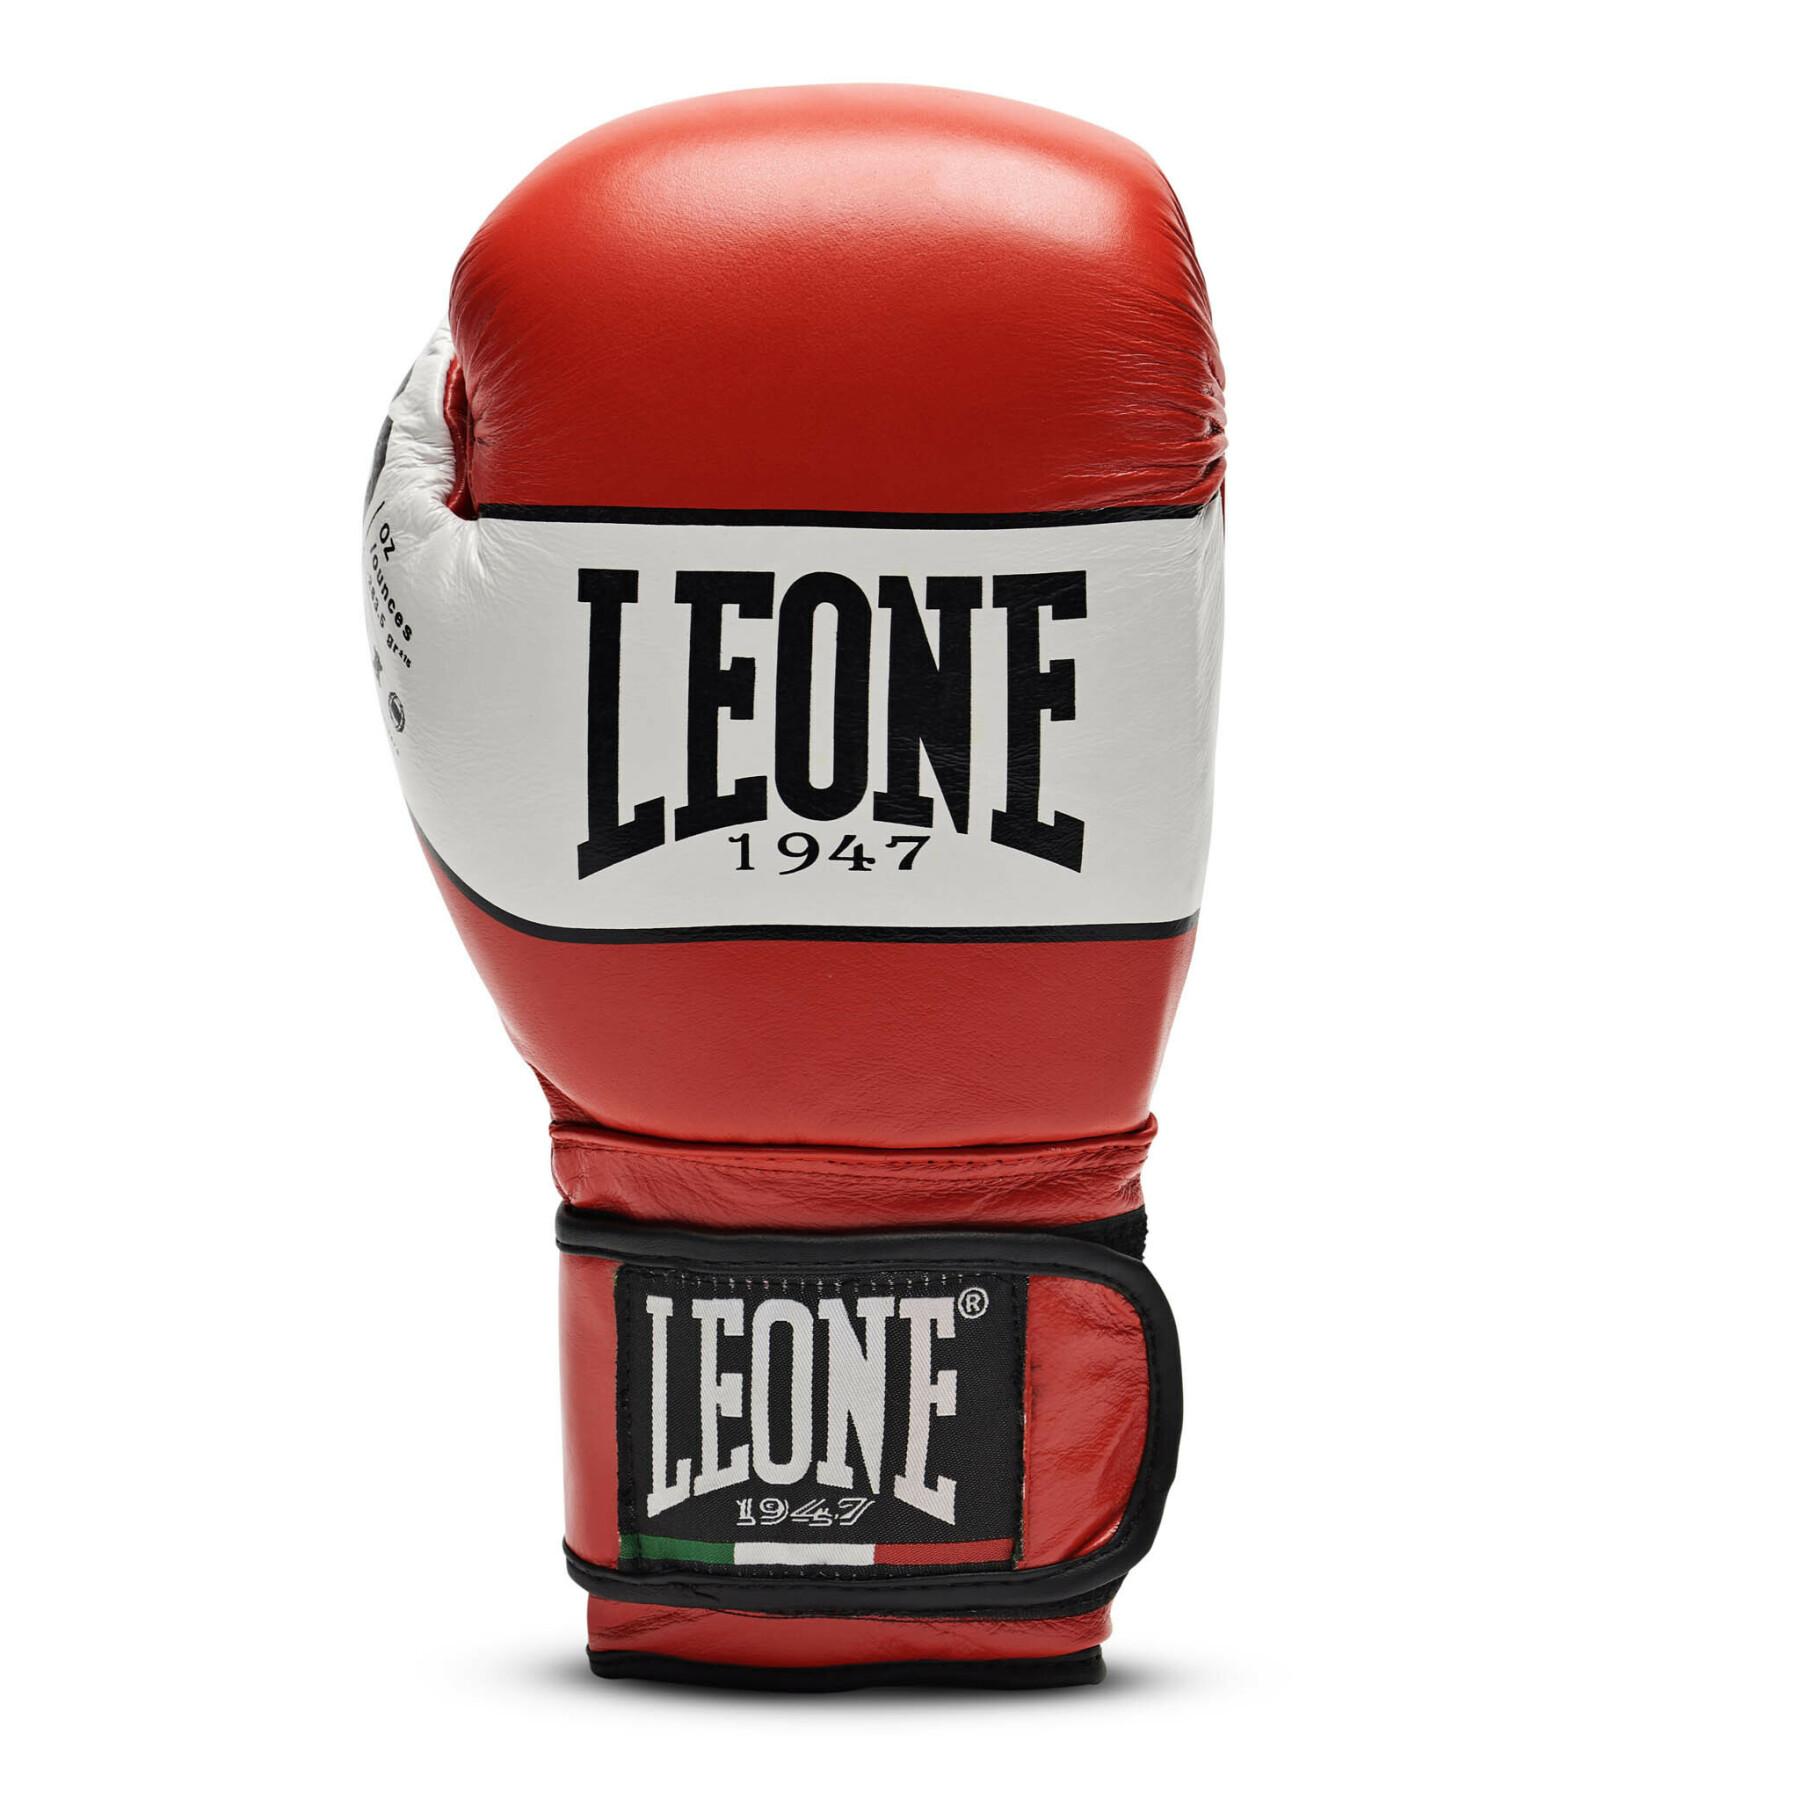 Boxing gloves Leone Shock 12 oz